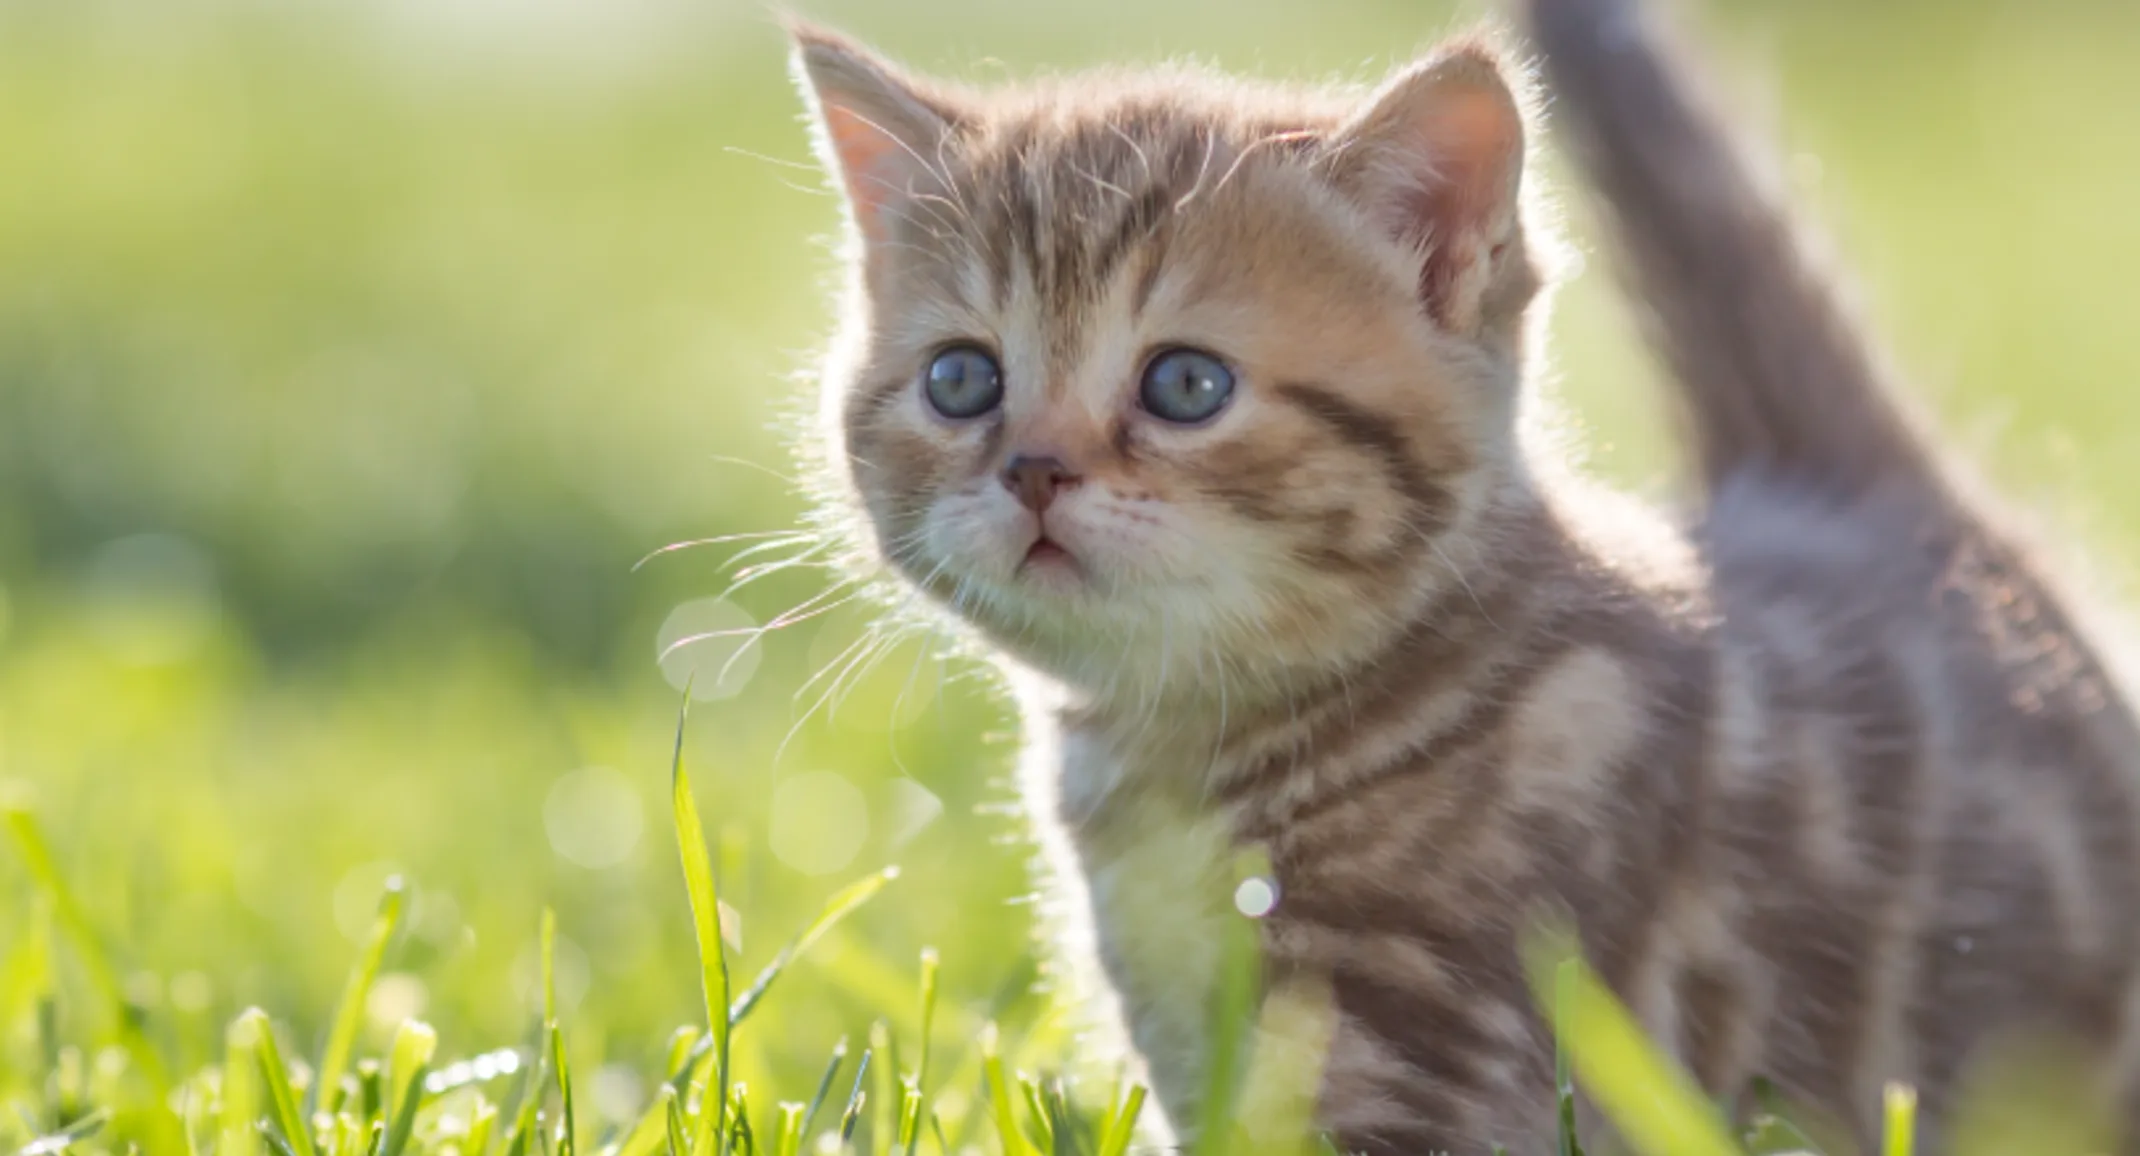 Cat walking through green grass